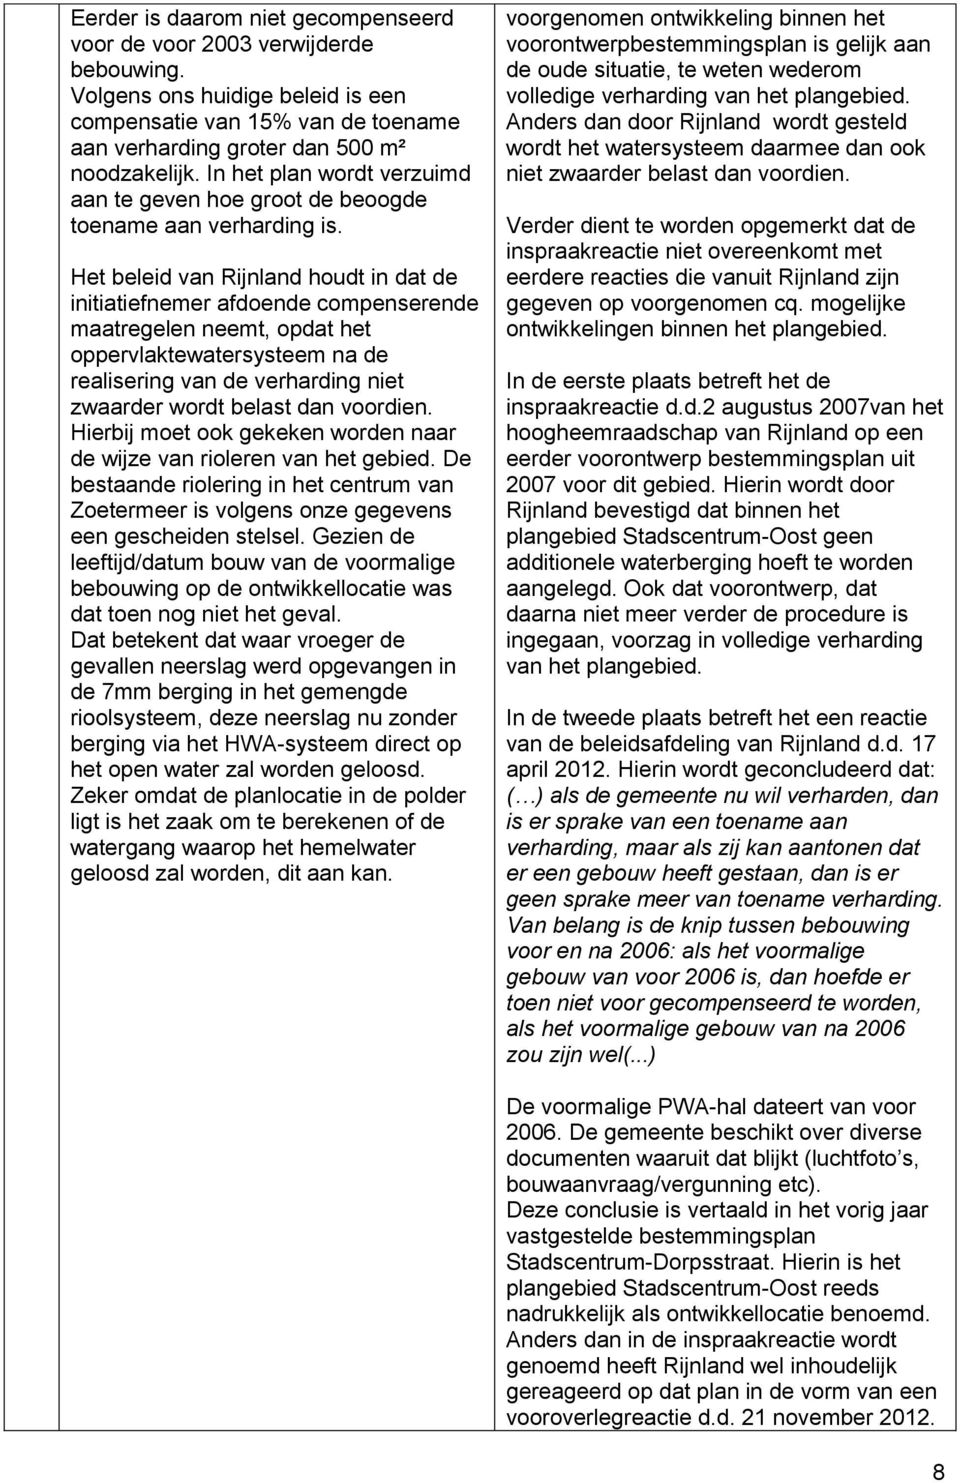 Het beleid van Rijnland houdt in dat de initiatiefnemer afdoende compenserende maatregelen neemt, opdat het oppervlaktewatersysteem na de realisering van de verharding niet zwaarder wordt belast dan